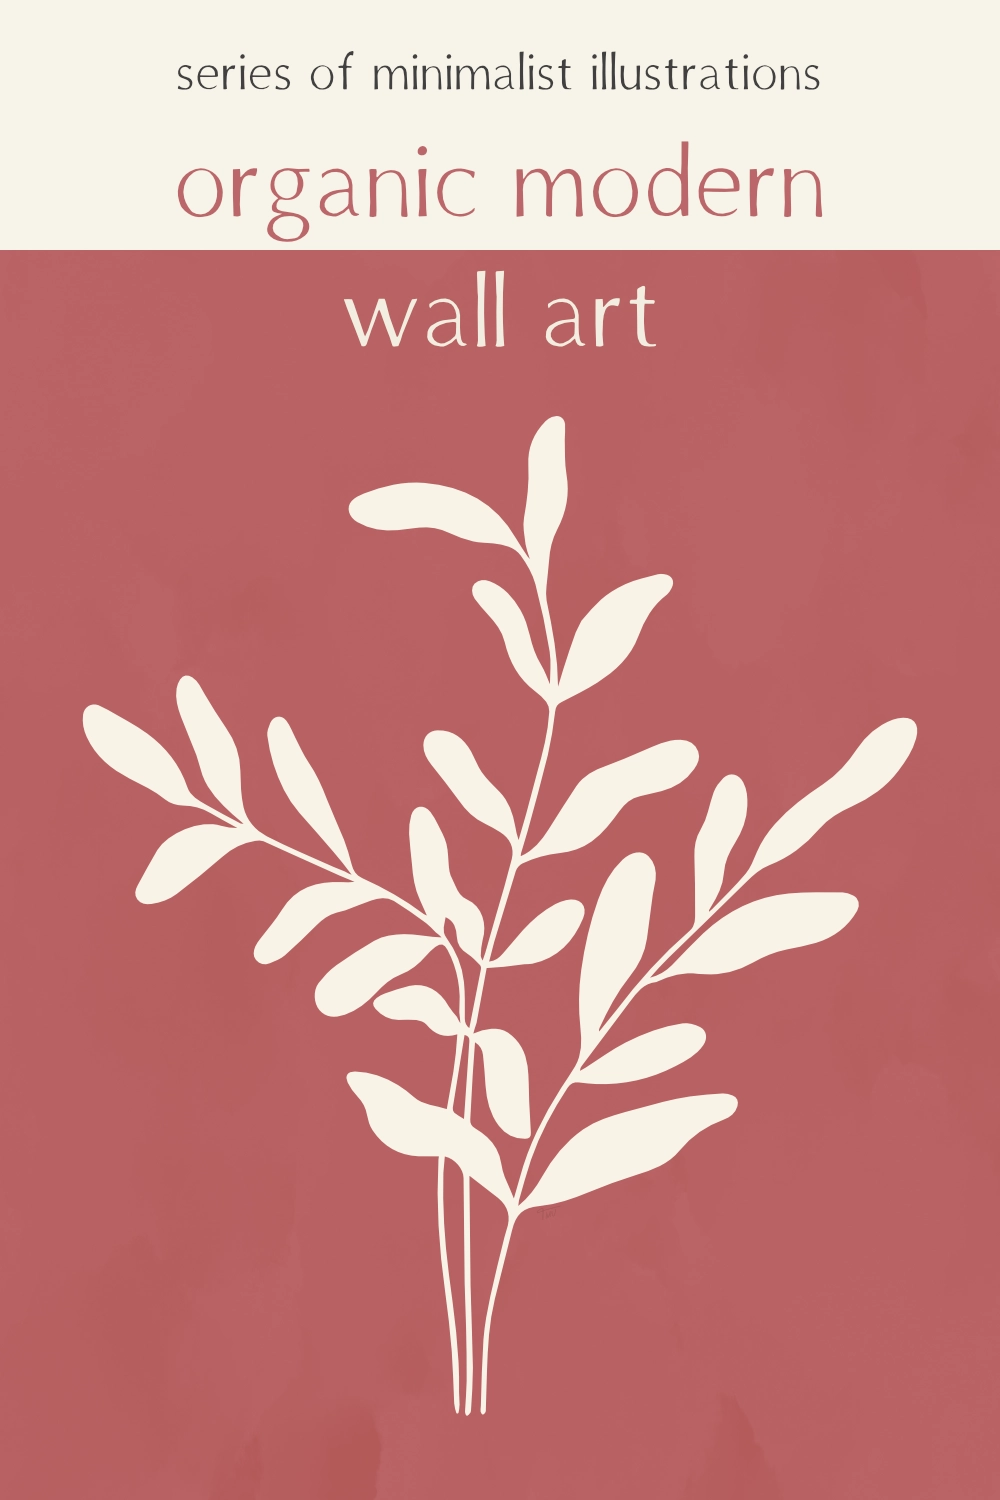 Organic modern wall art minimalist illustrations series